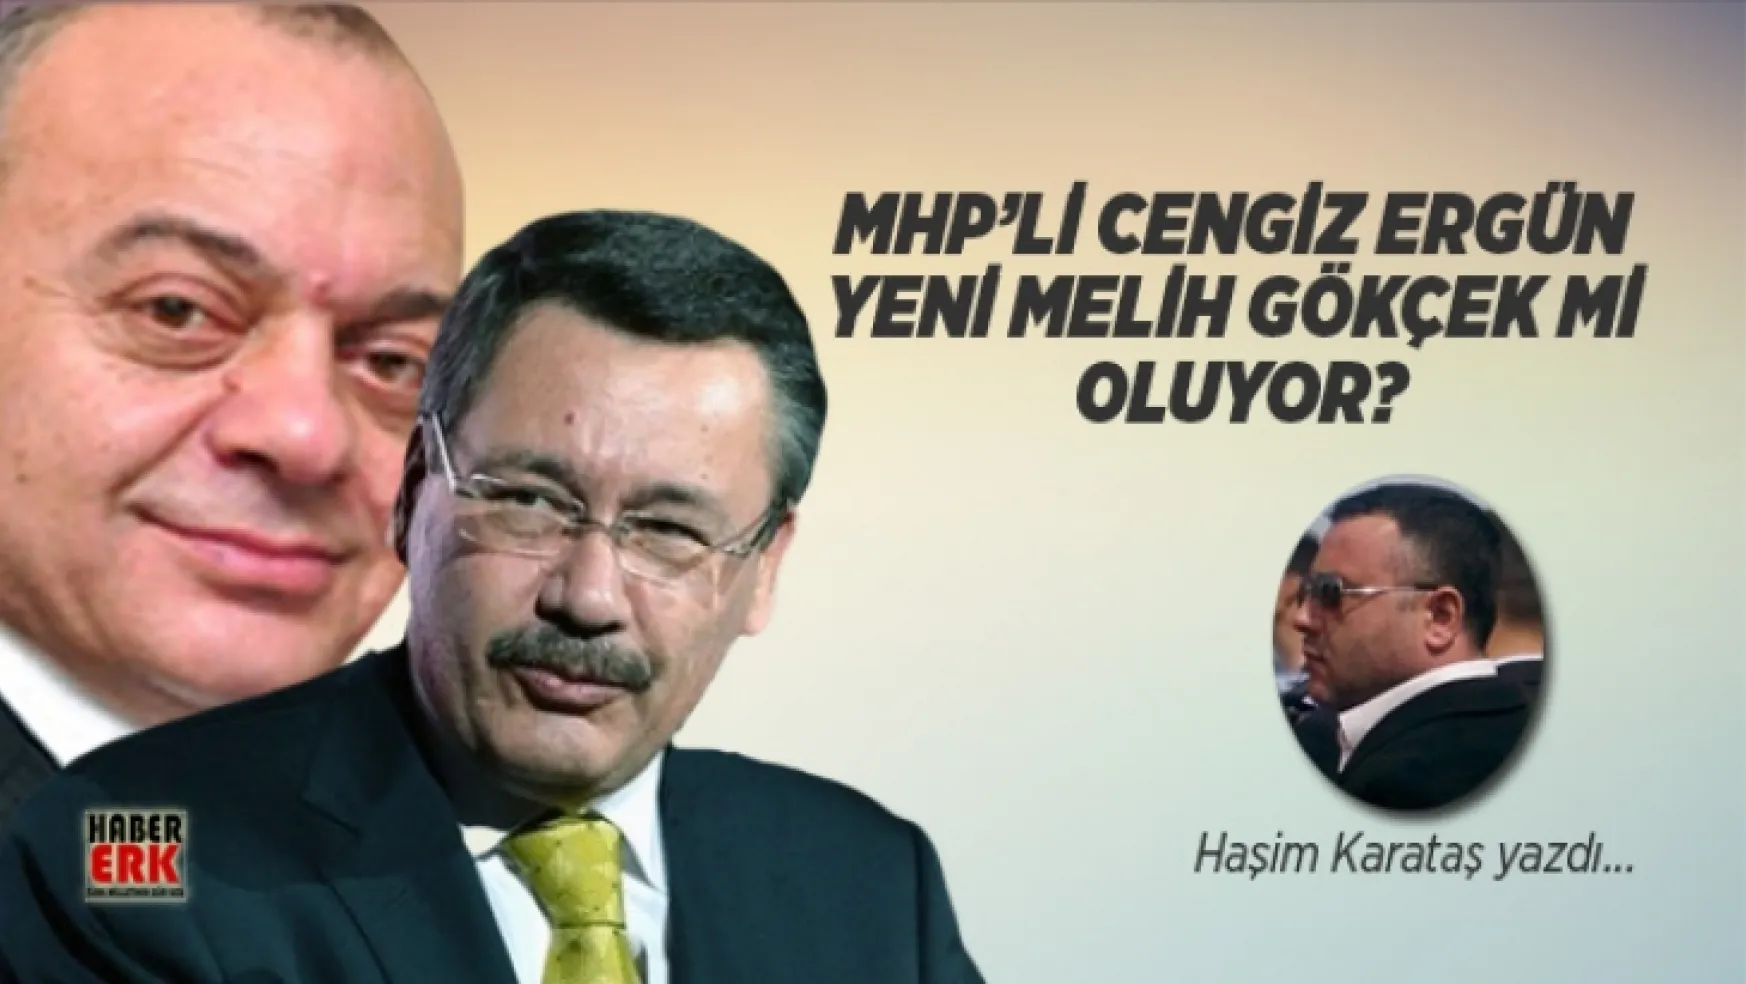 Karataş,'Habererk'e yazdı MHP'li Cengiz Ergün yeni Melih Gökçek mi oluyor?